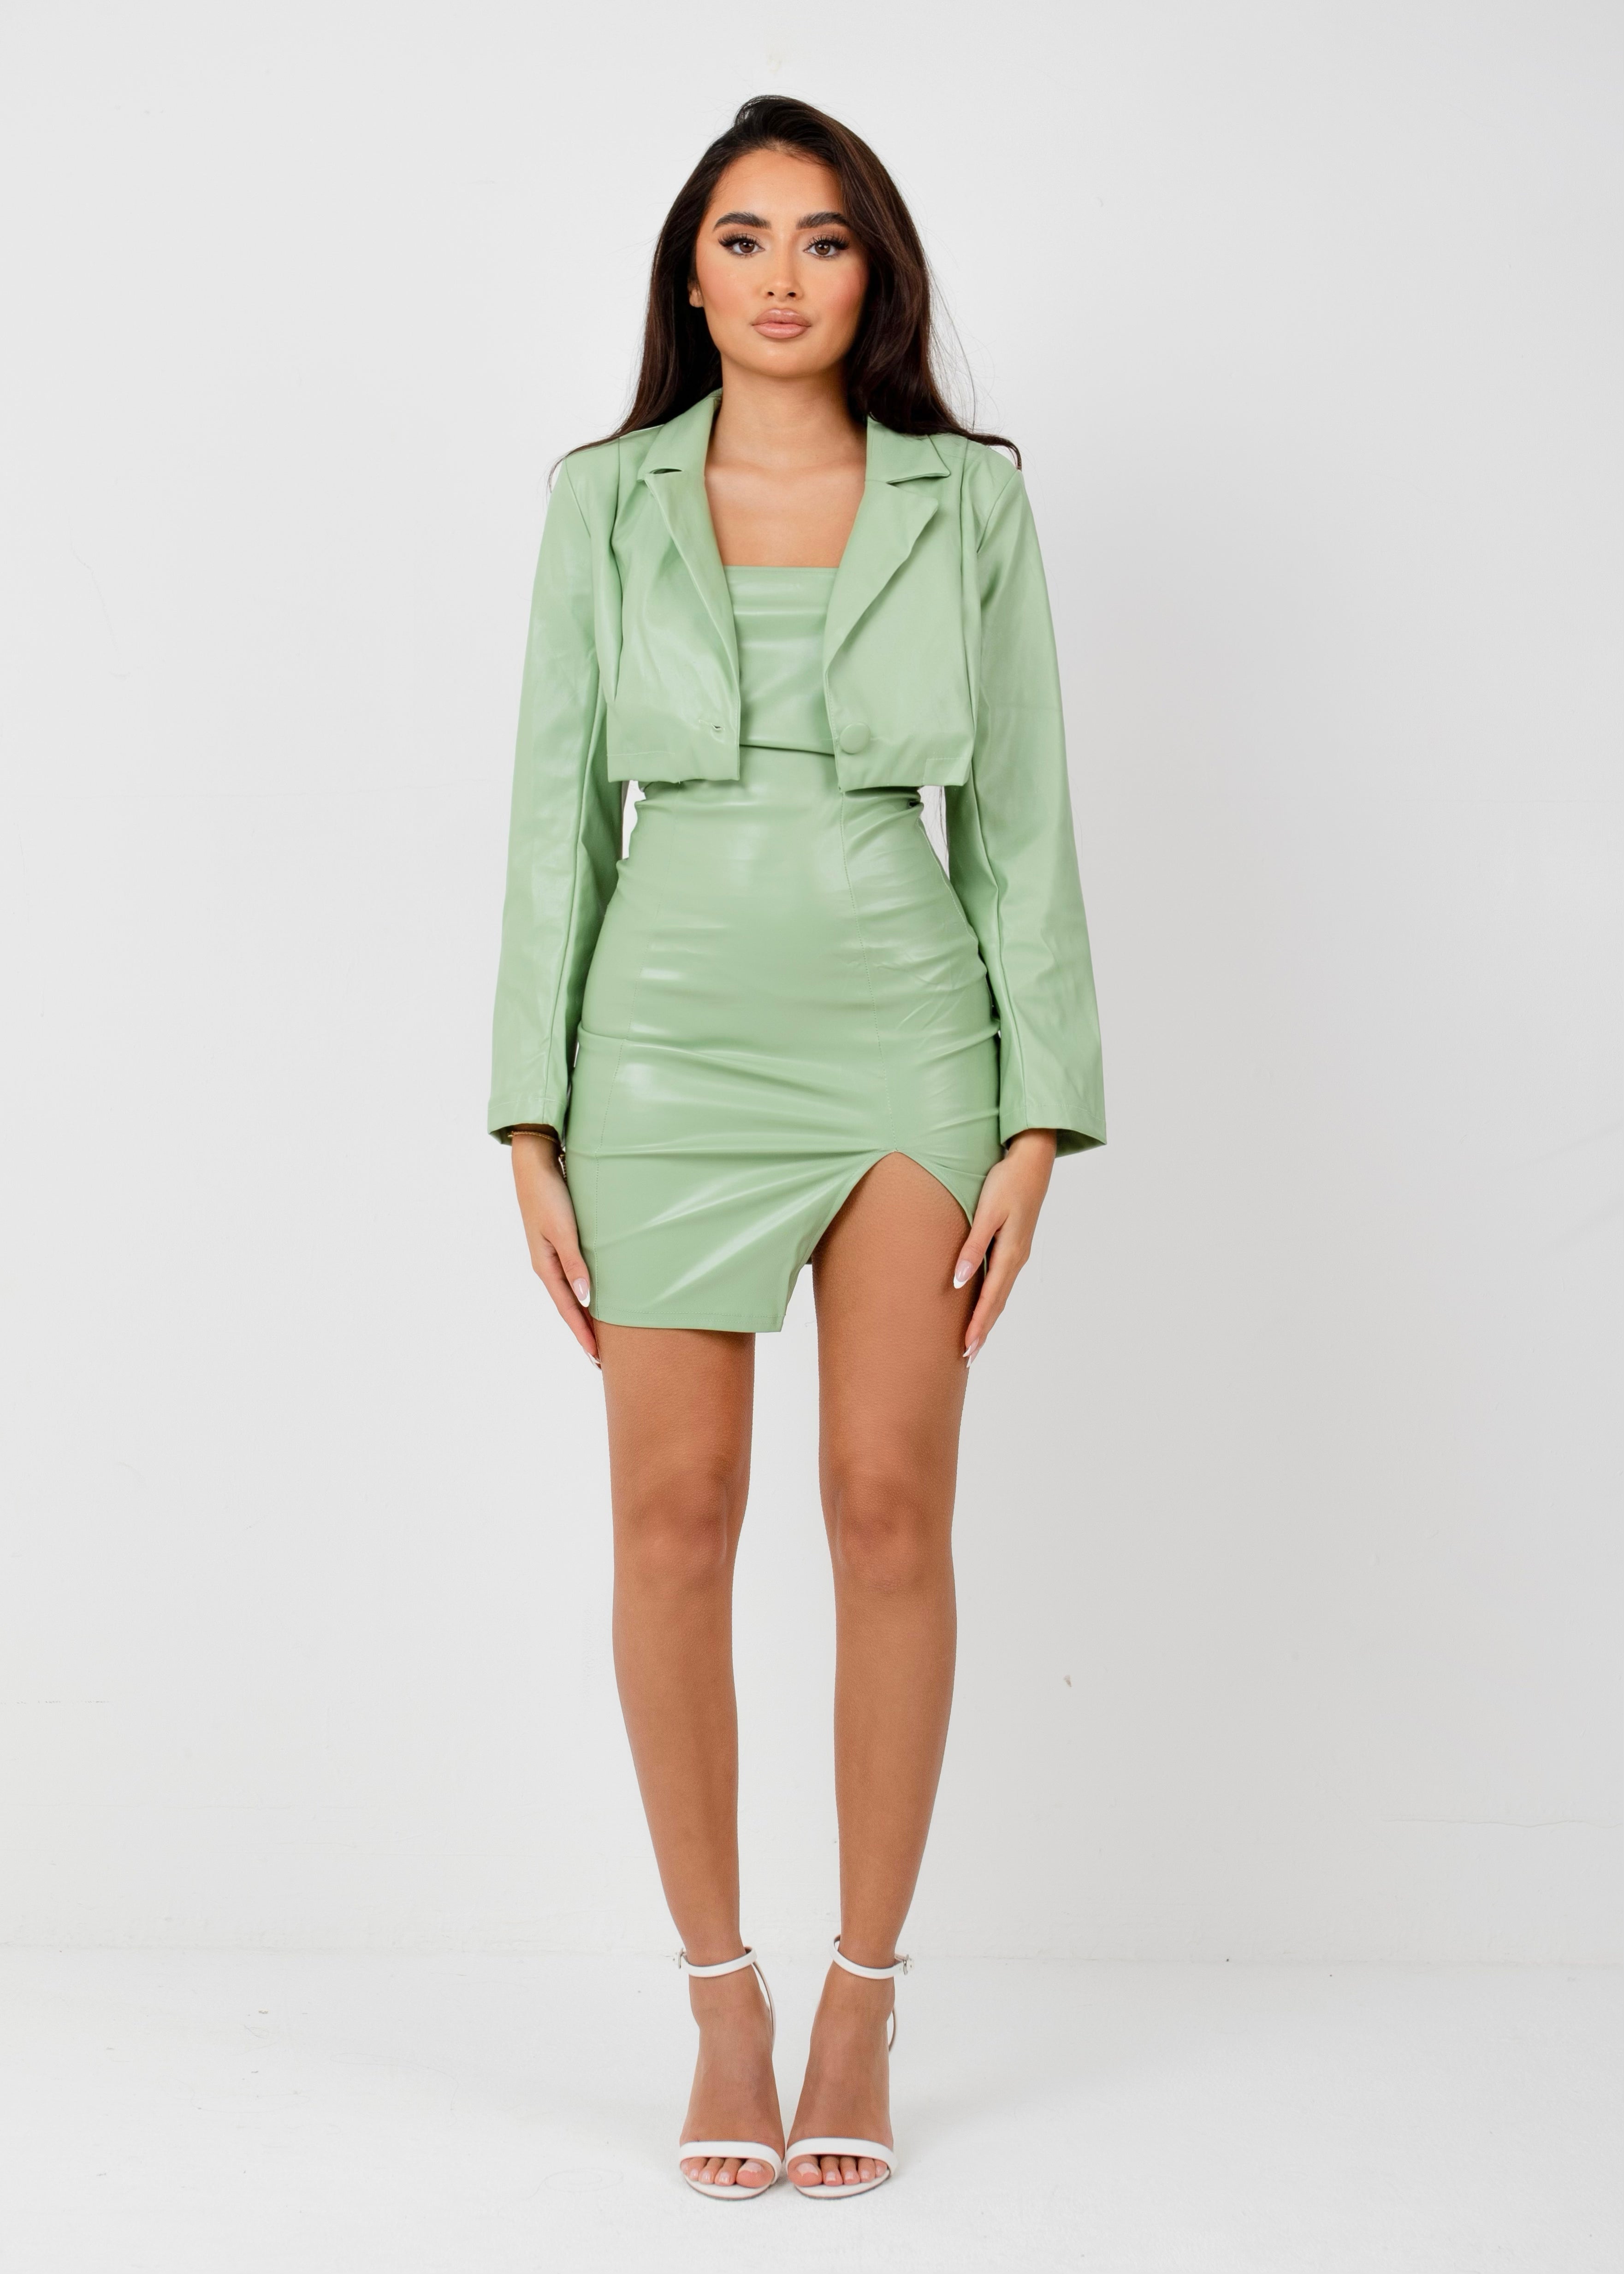 JOIE - Green Dress & Crop Jacket - SALE